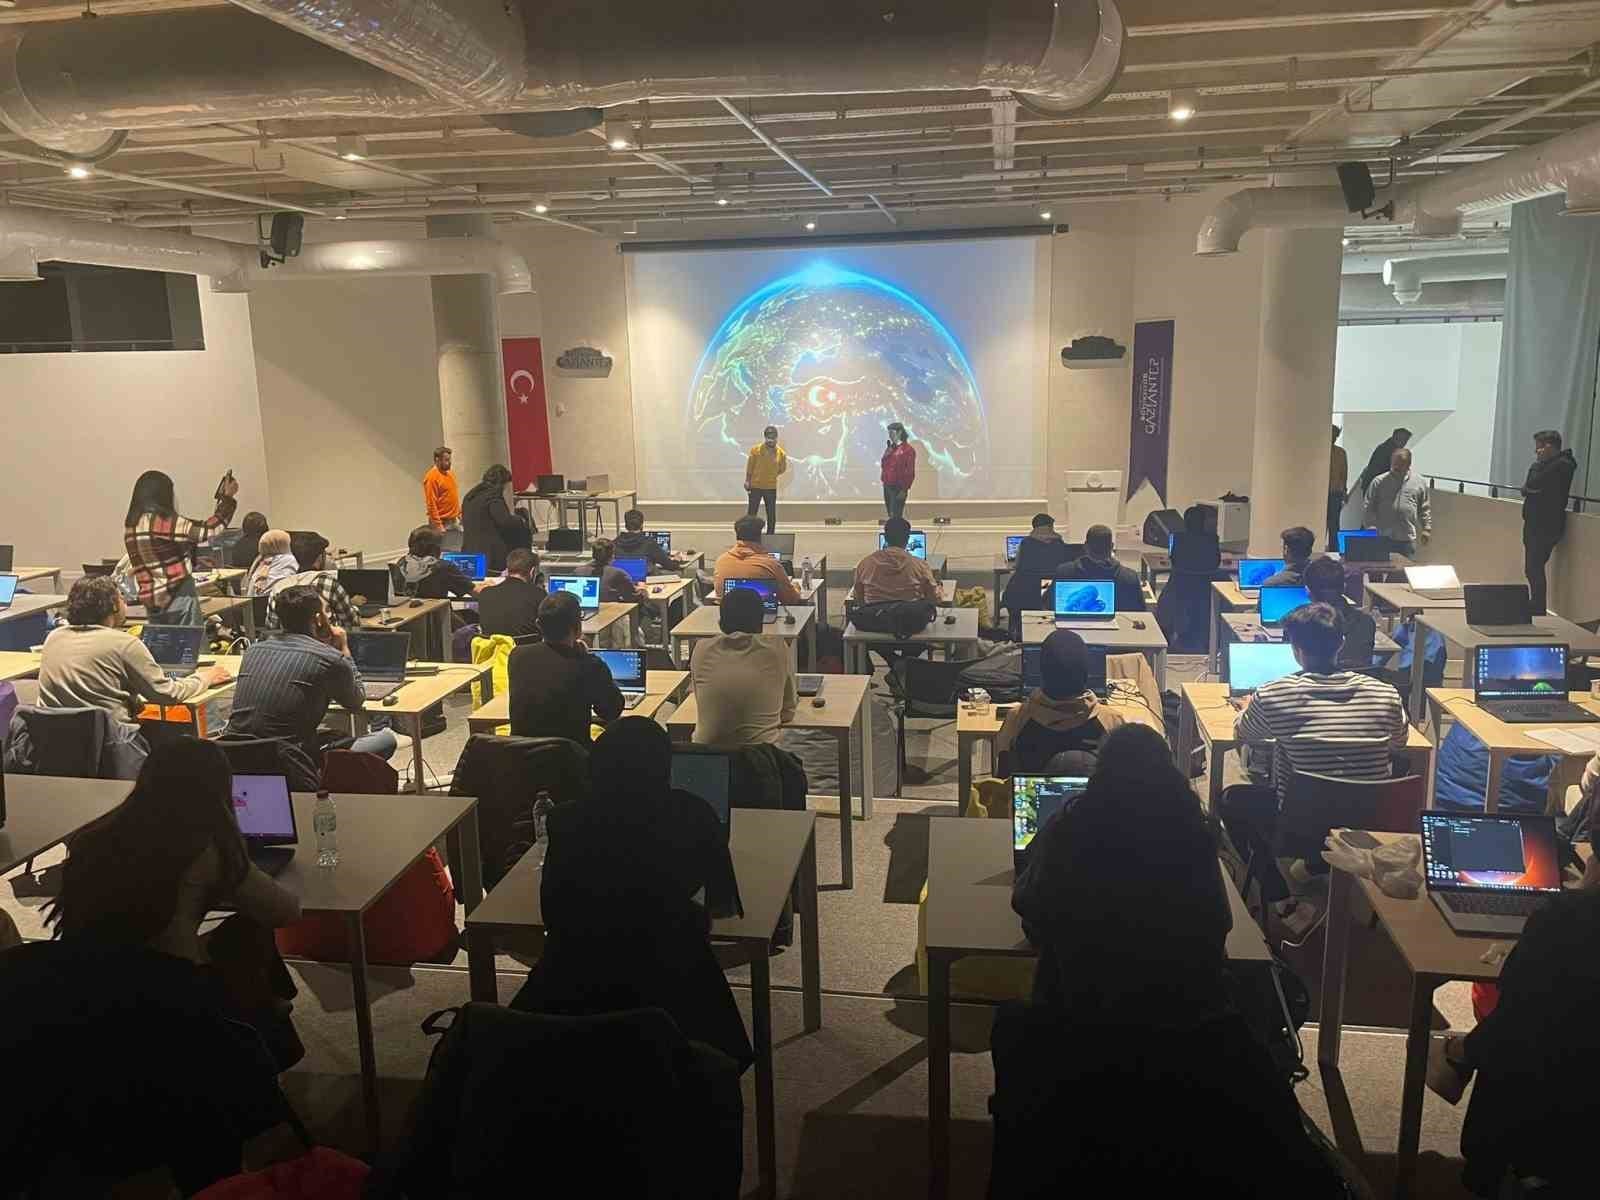 ramazan gamecode camp etkinligi duzenlendi 1 JCFGGETj